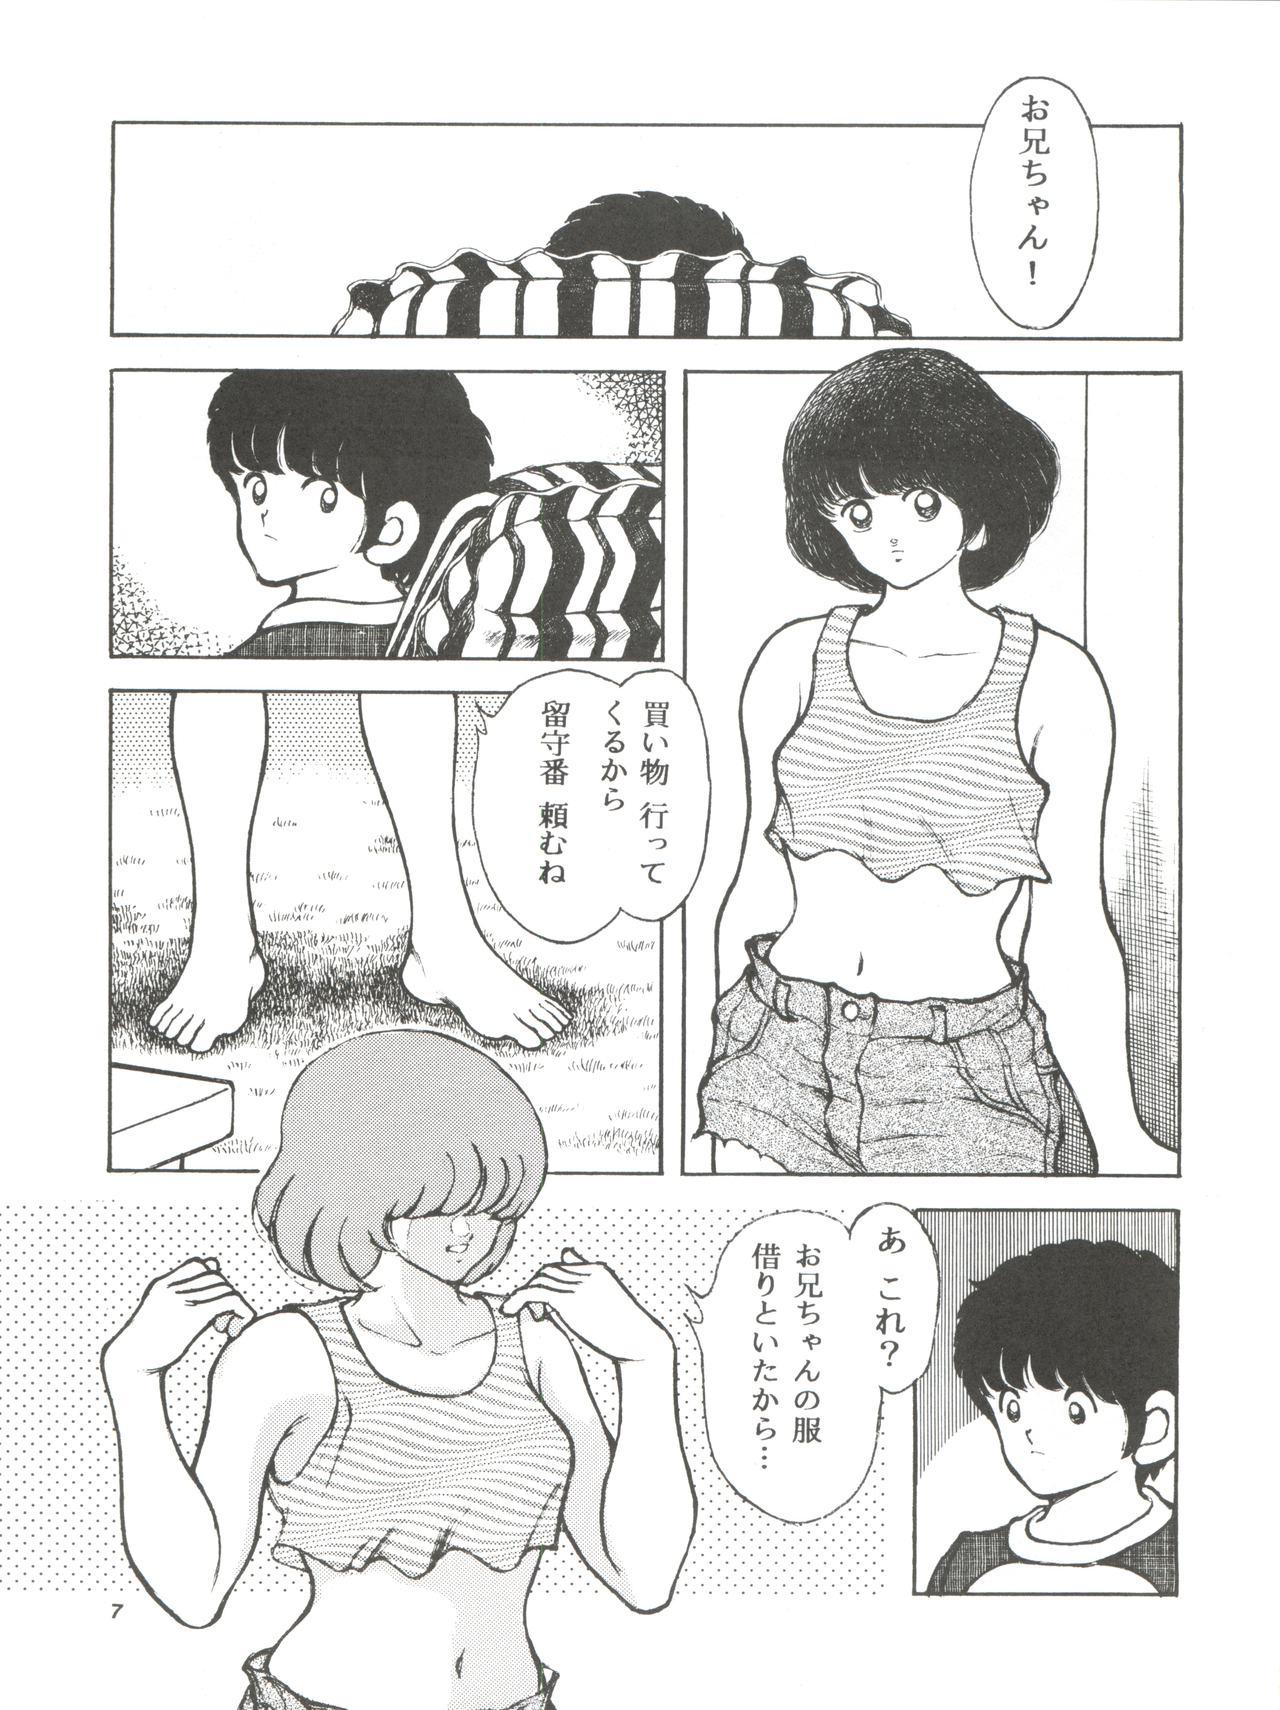 [STUDIO SHARAKU (Sharaku Seiya)] Kanshoku -TOUCH- vol.4 (Miyuki) [1996-08-03] 6